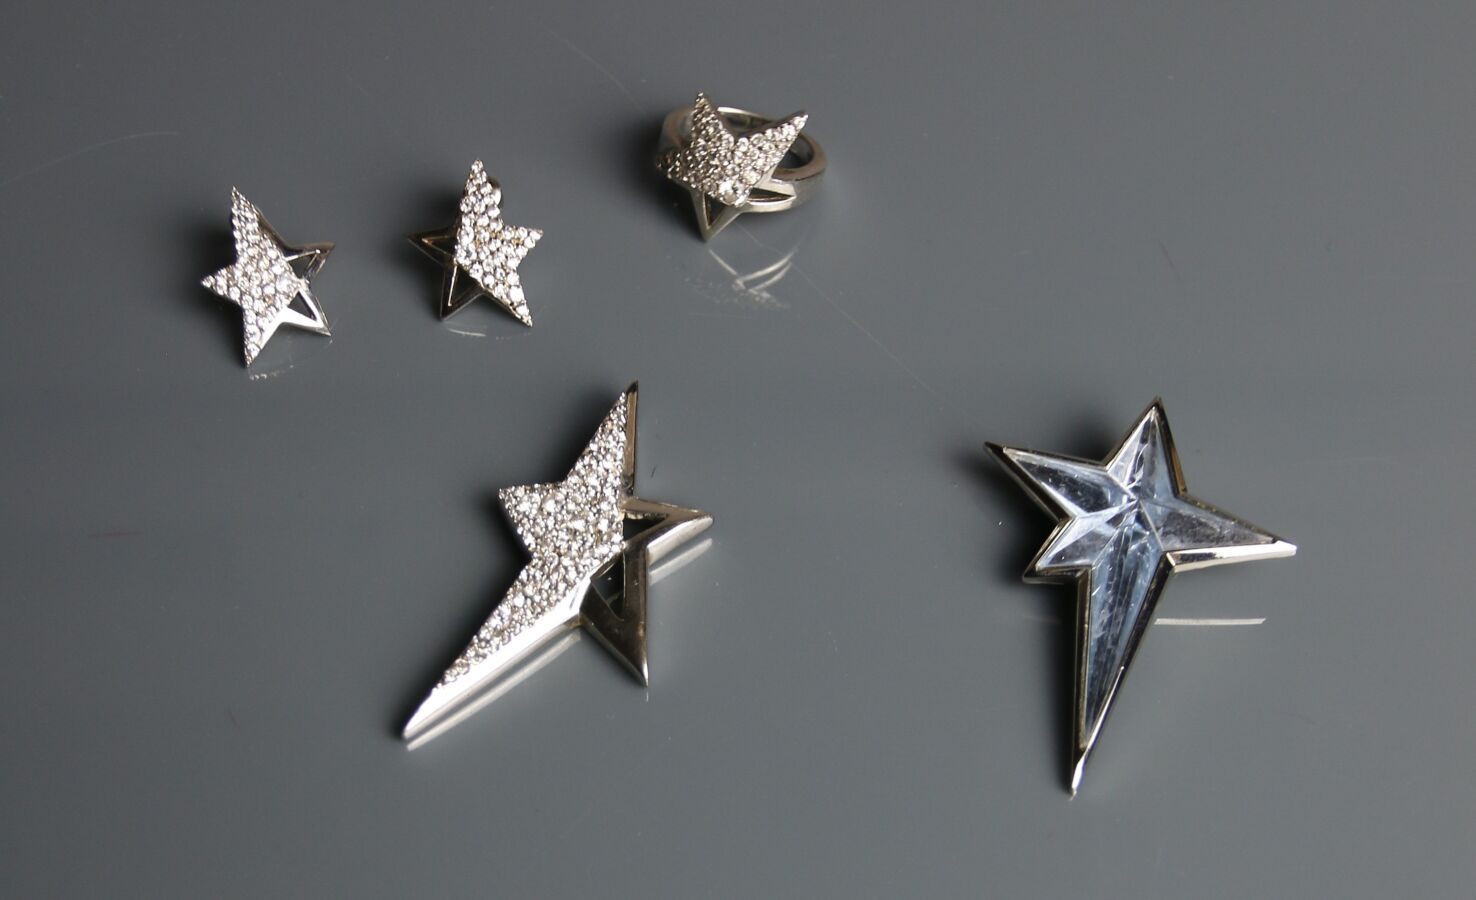 Null 蒂尔里-穆格莱
由镀铬金属镶嵌水钻的吊坠、一对耳环和星形戒指组成的拍品
TDD 56
包括一个镀铬金属和蓝色天使的星形胸针
带箱子